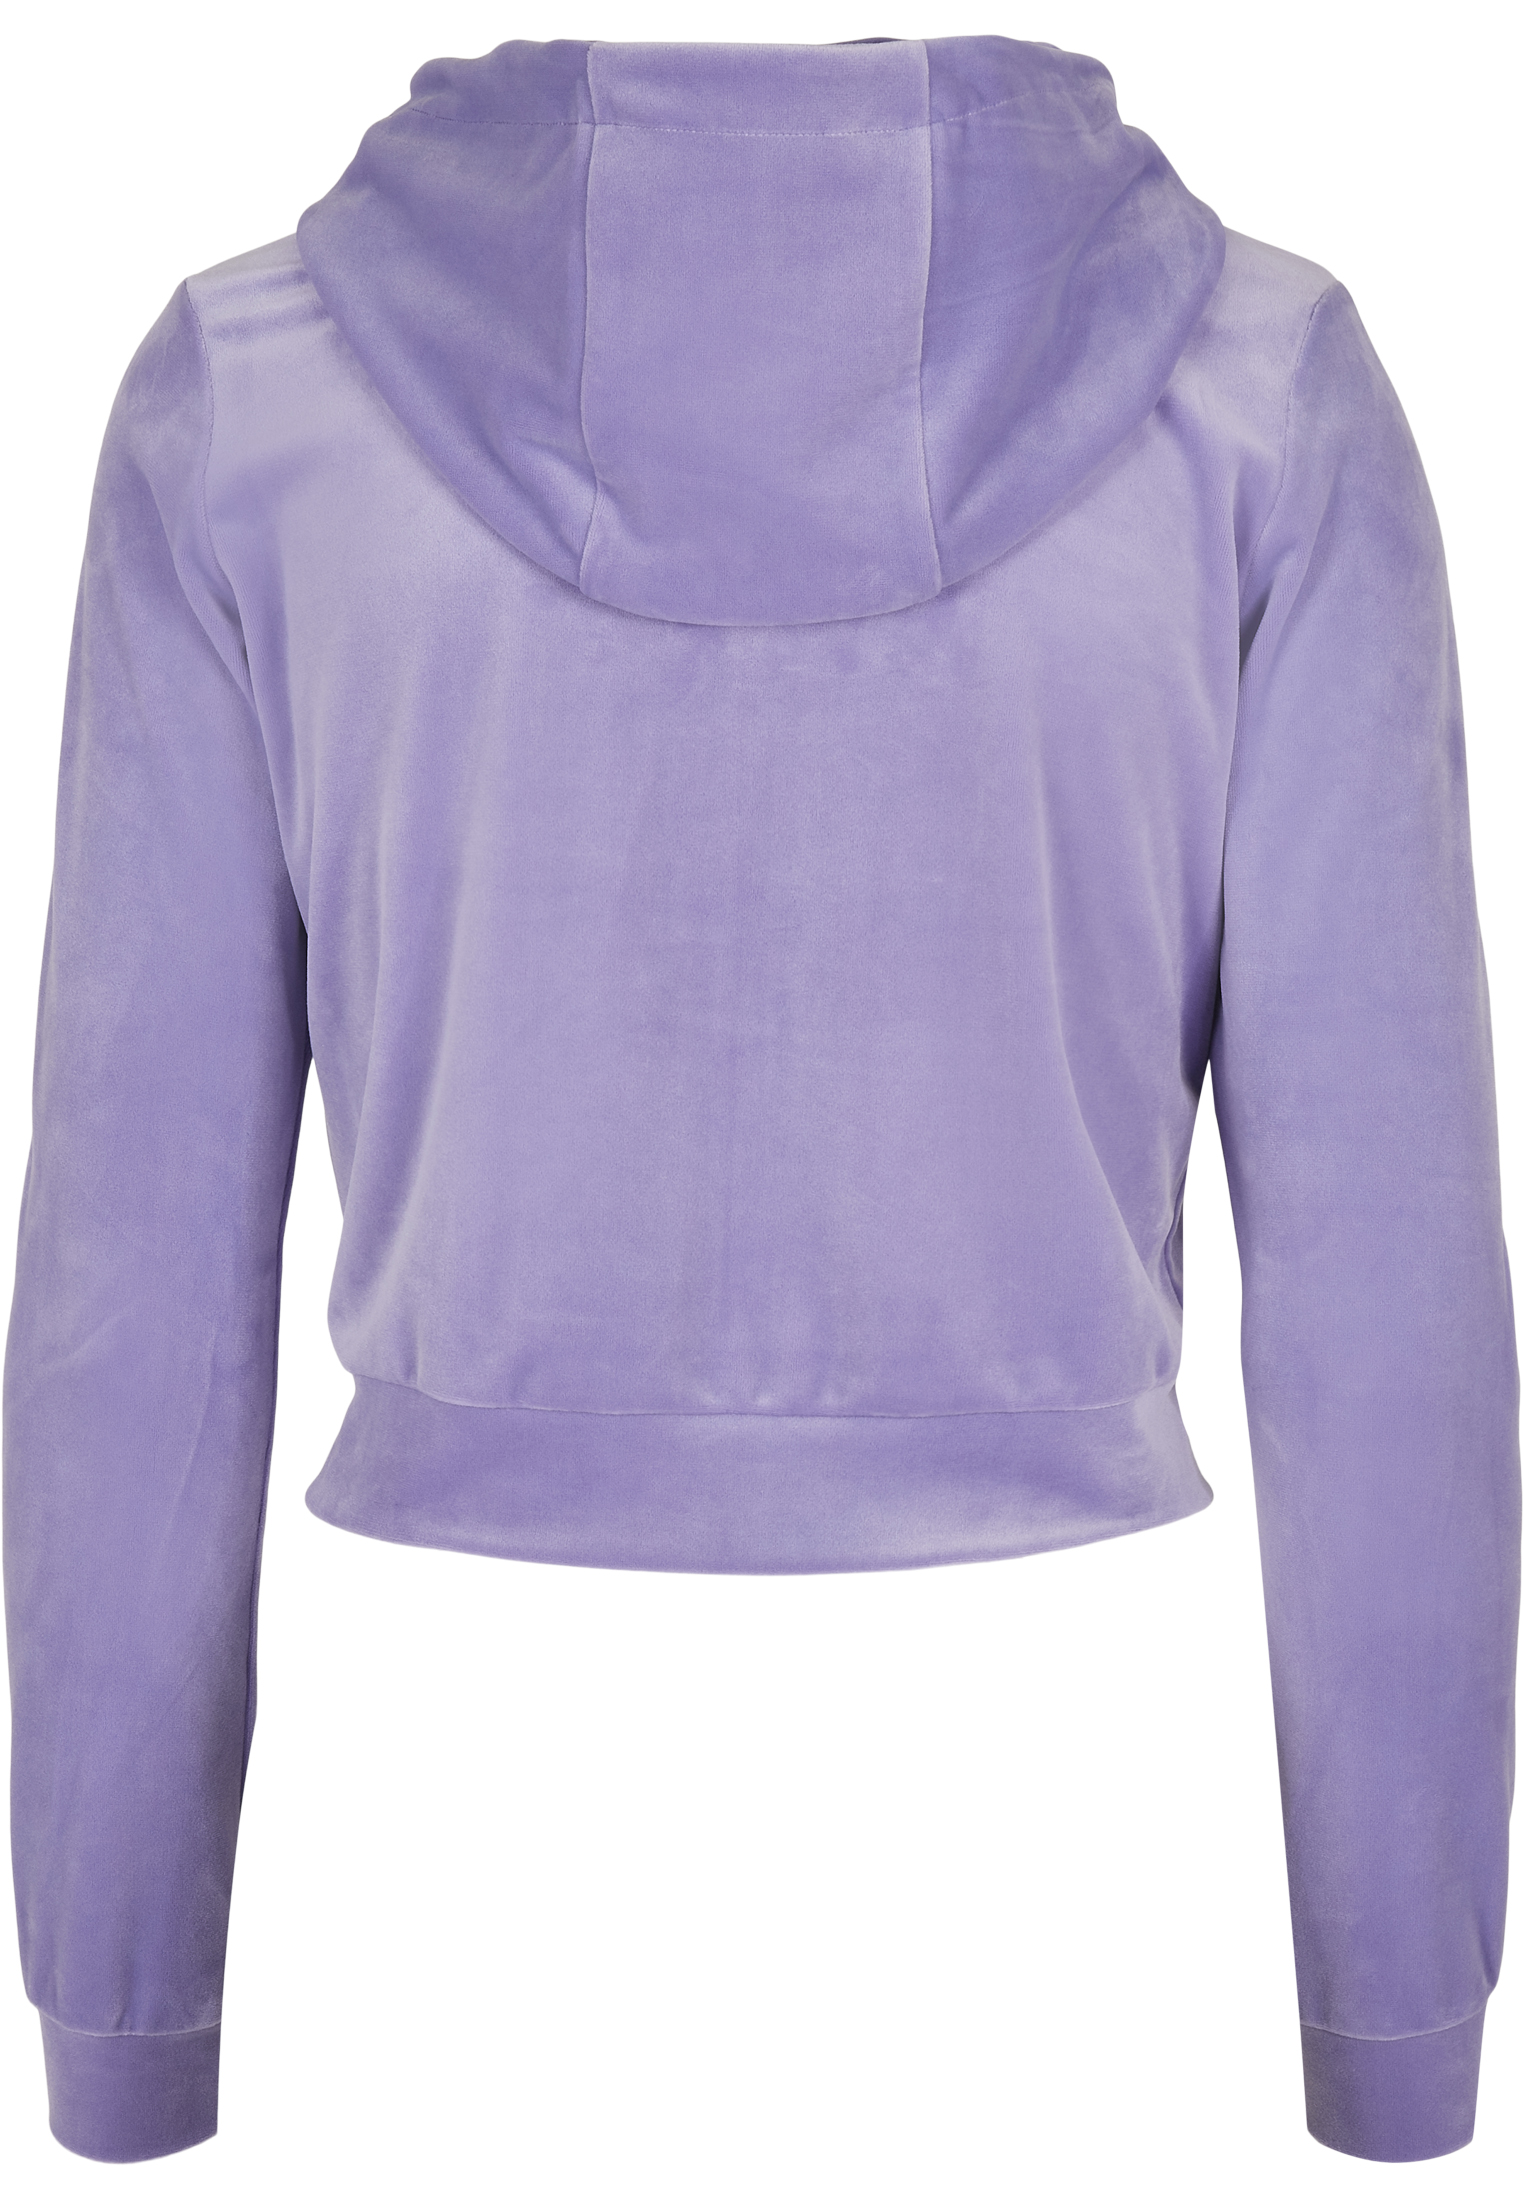 Zip Hoodies Ladies Short Velvet Zip Hoody in Farbe lavender